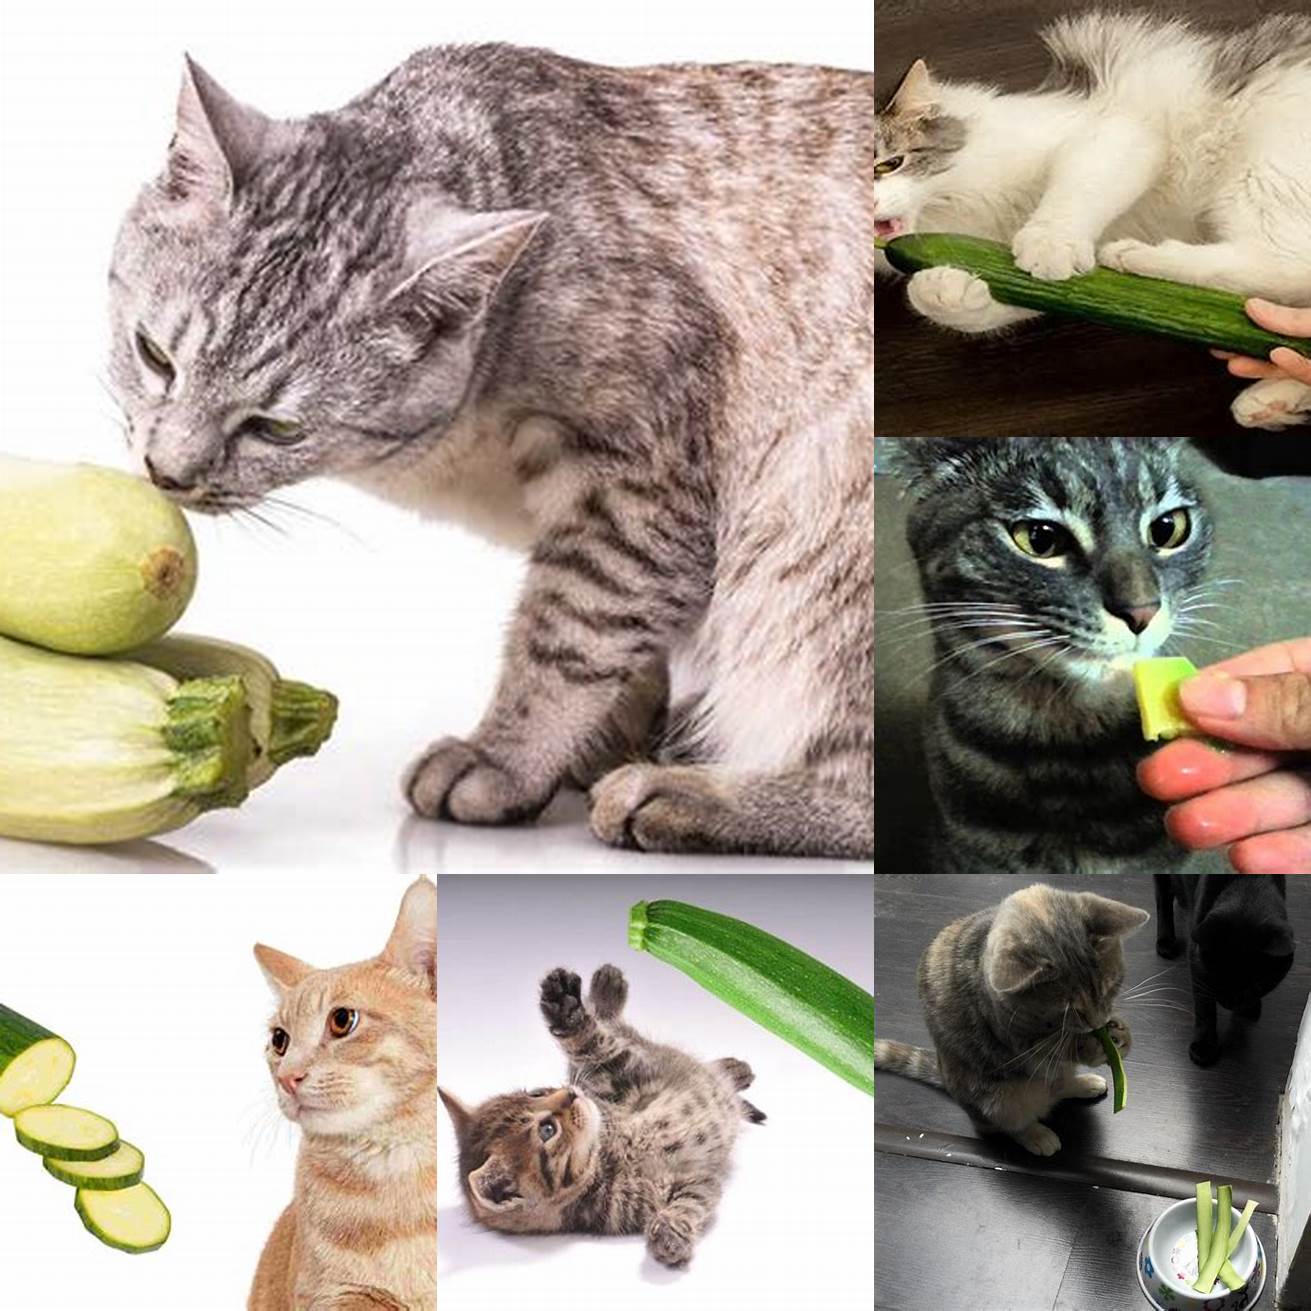 Cat eating zucchini